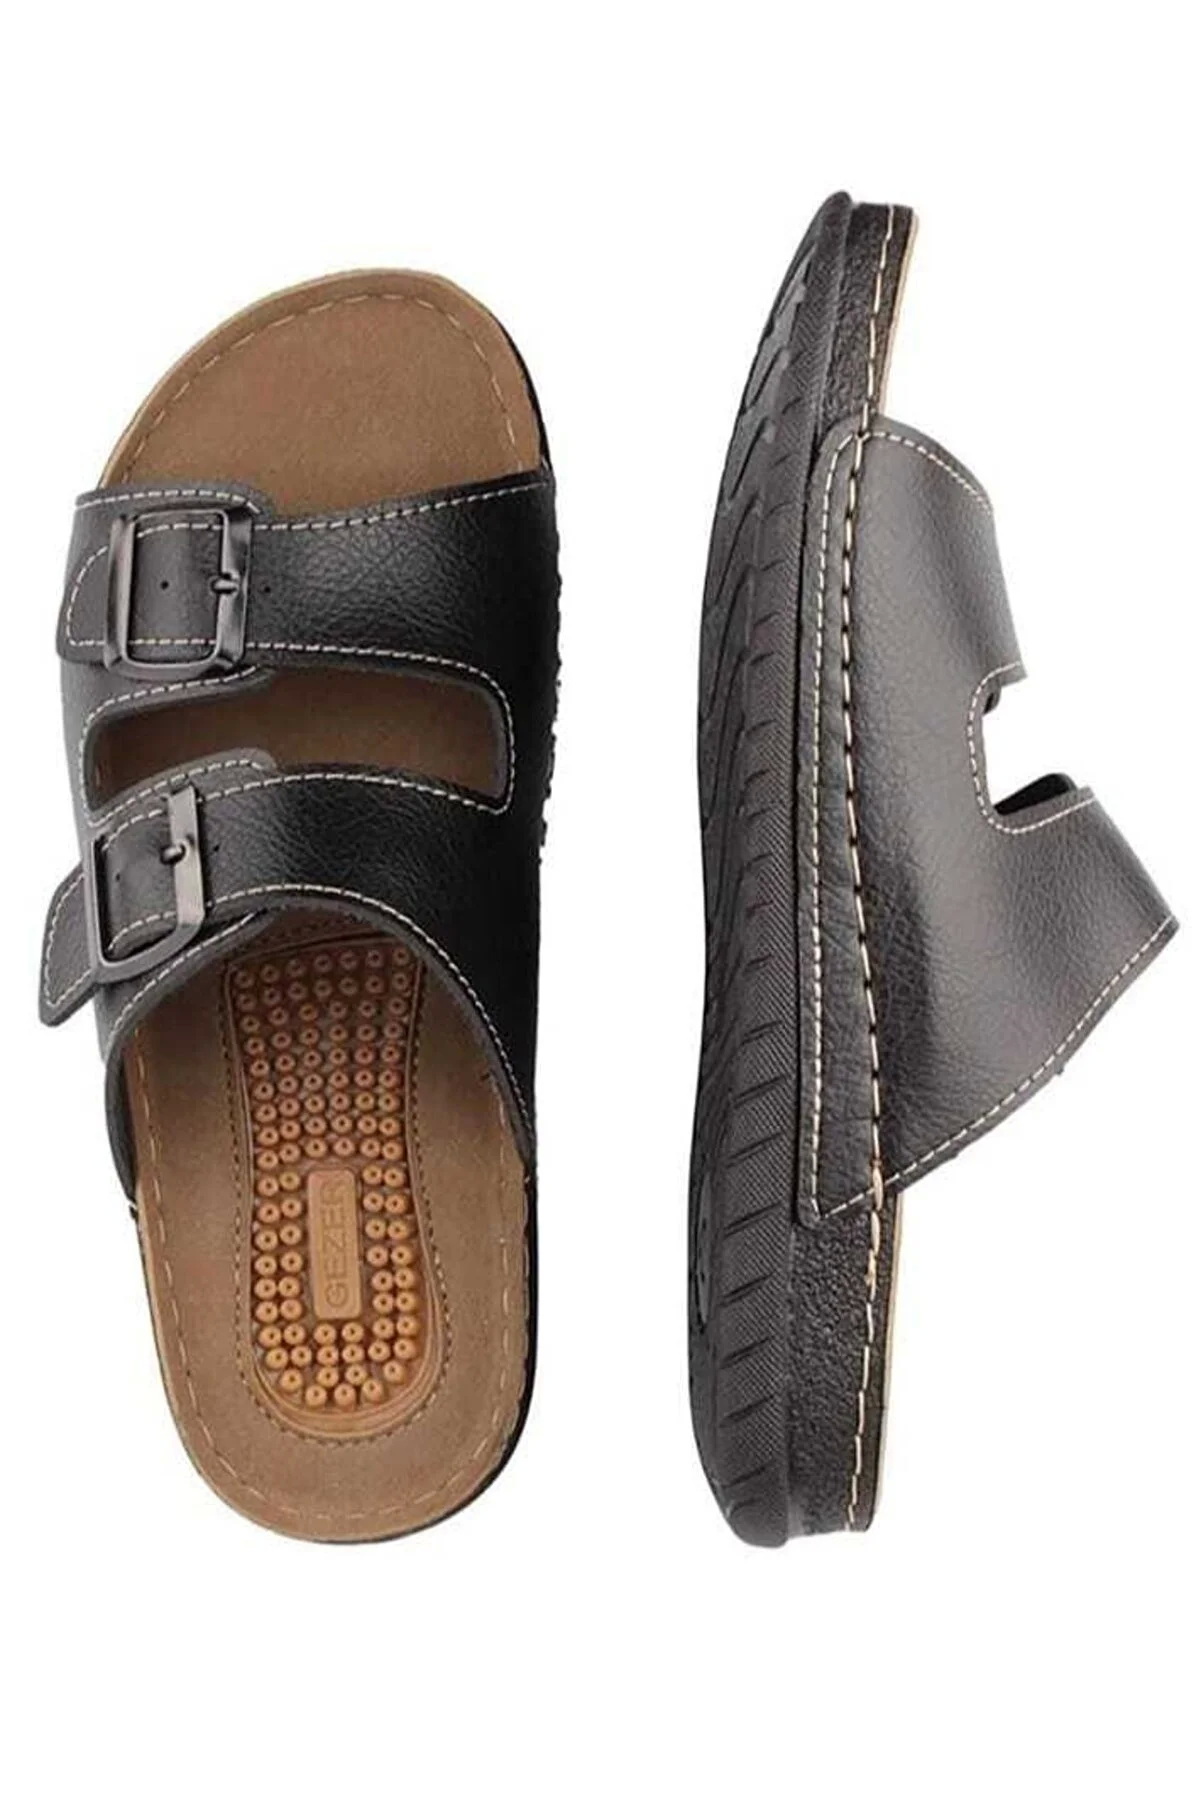 Shop Gezer PU Leather & Rubber Slipper for Men Black & Brown